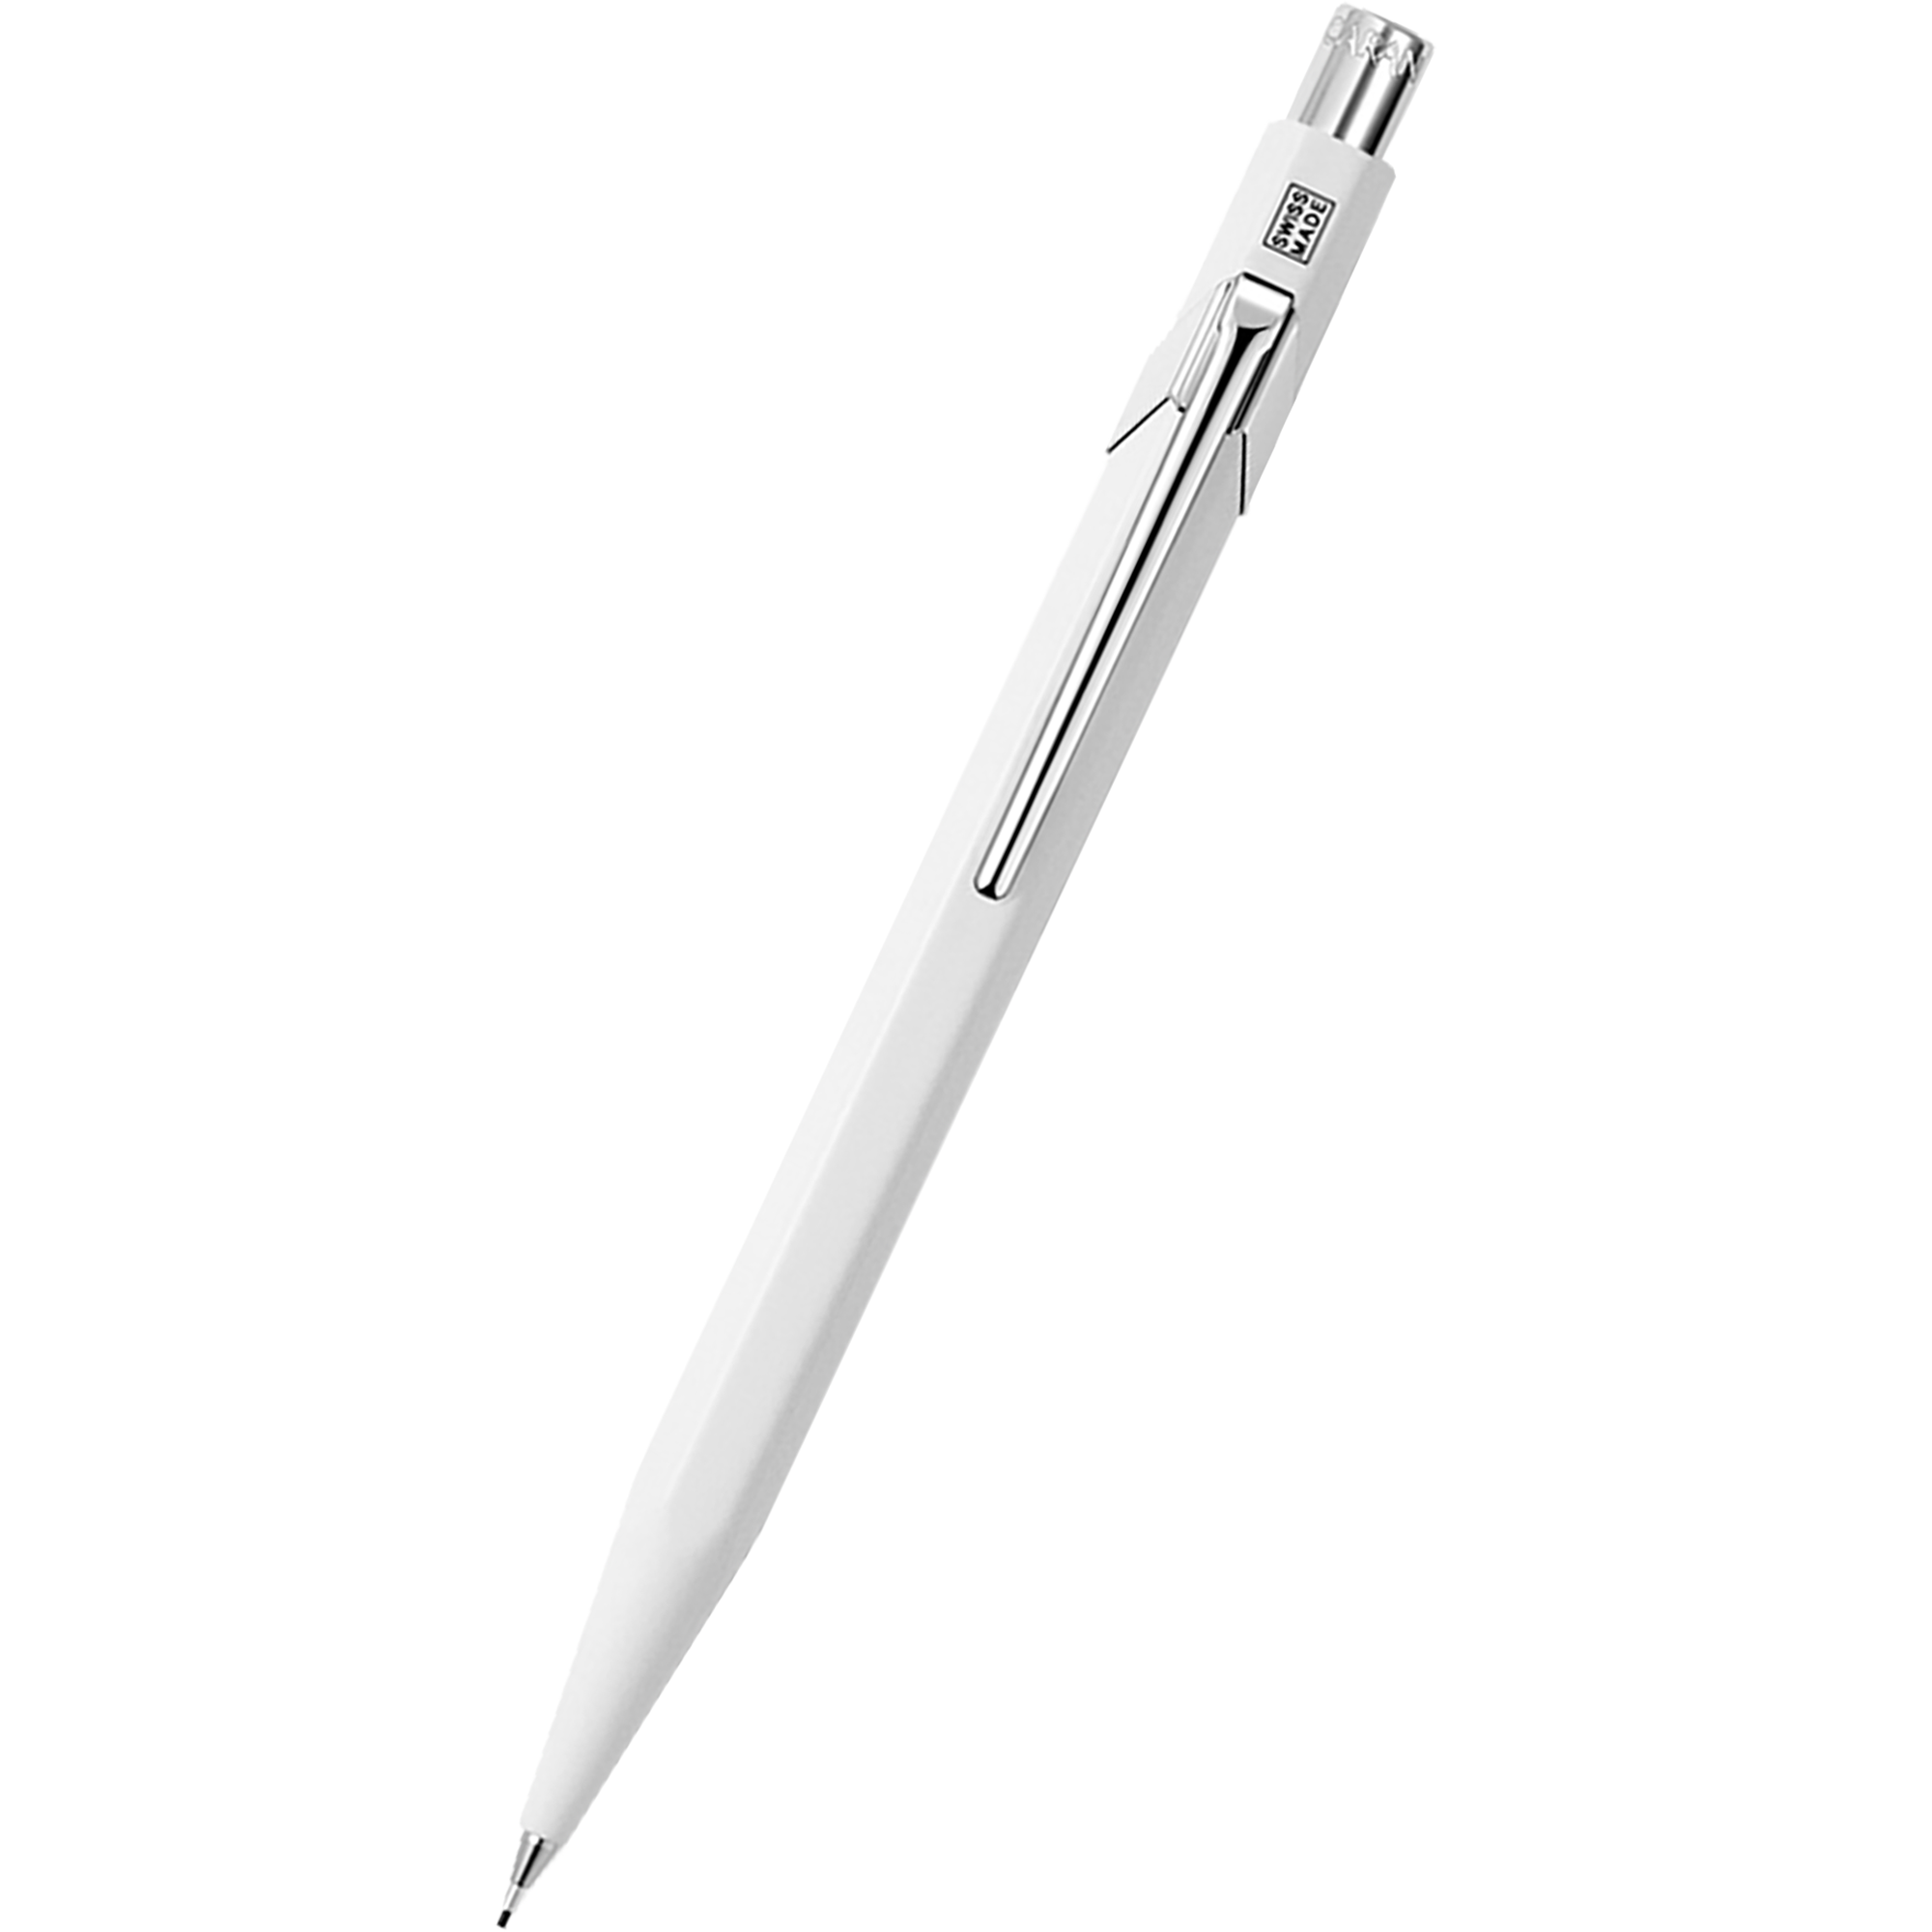 Caran d'Ache 844 Mechanical Pencil - White - 0.7mm-Pen Boutique Ltd